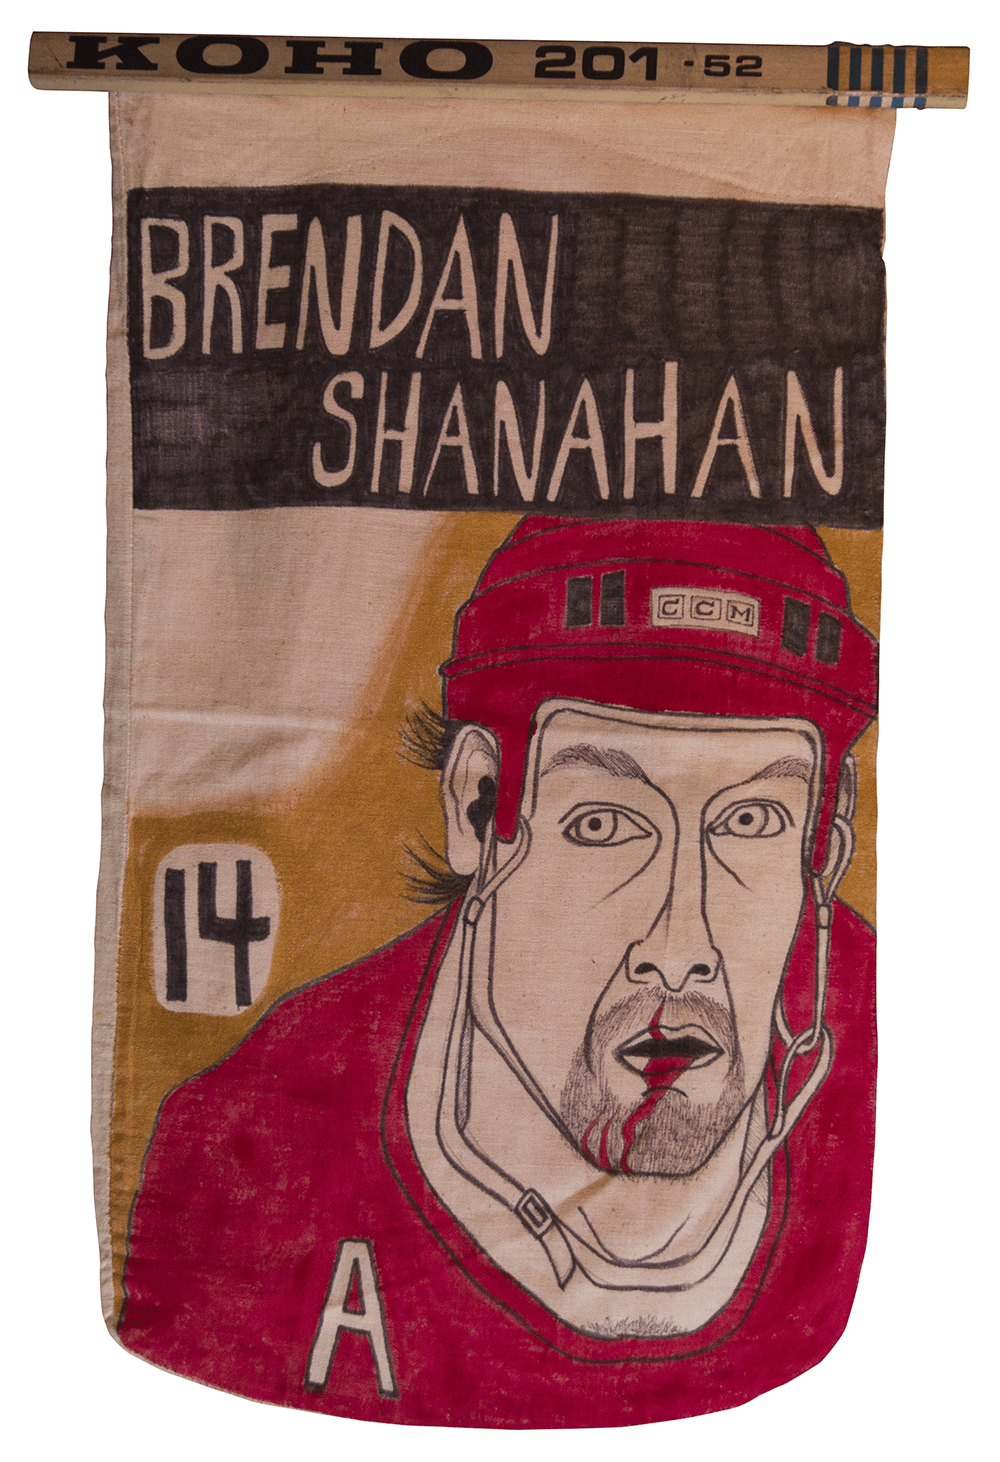 Olympia Stadium: Brendan Shanahan